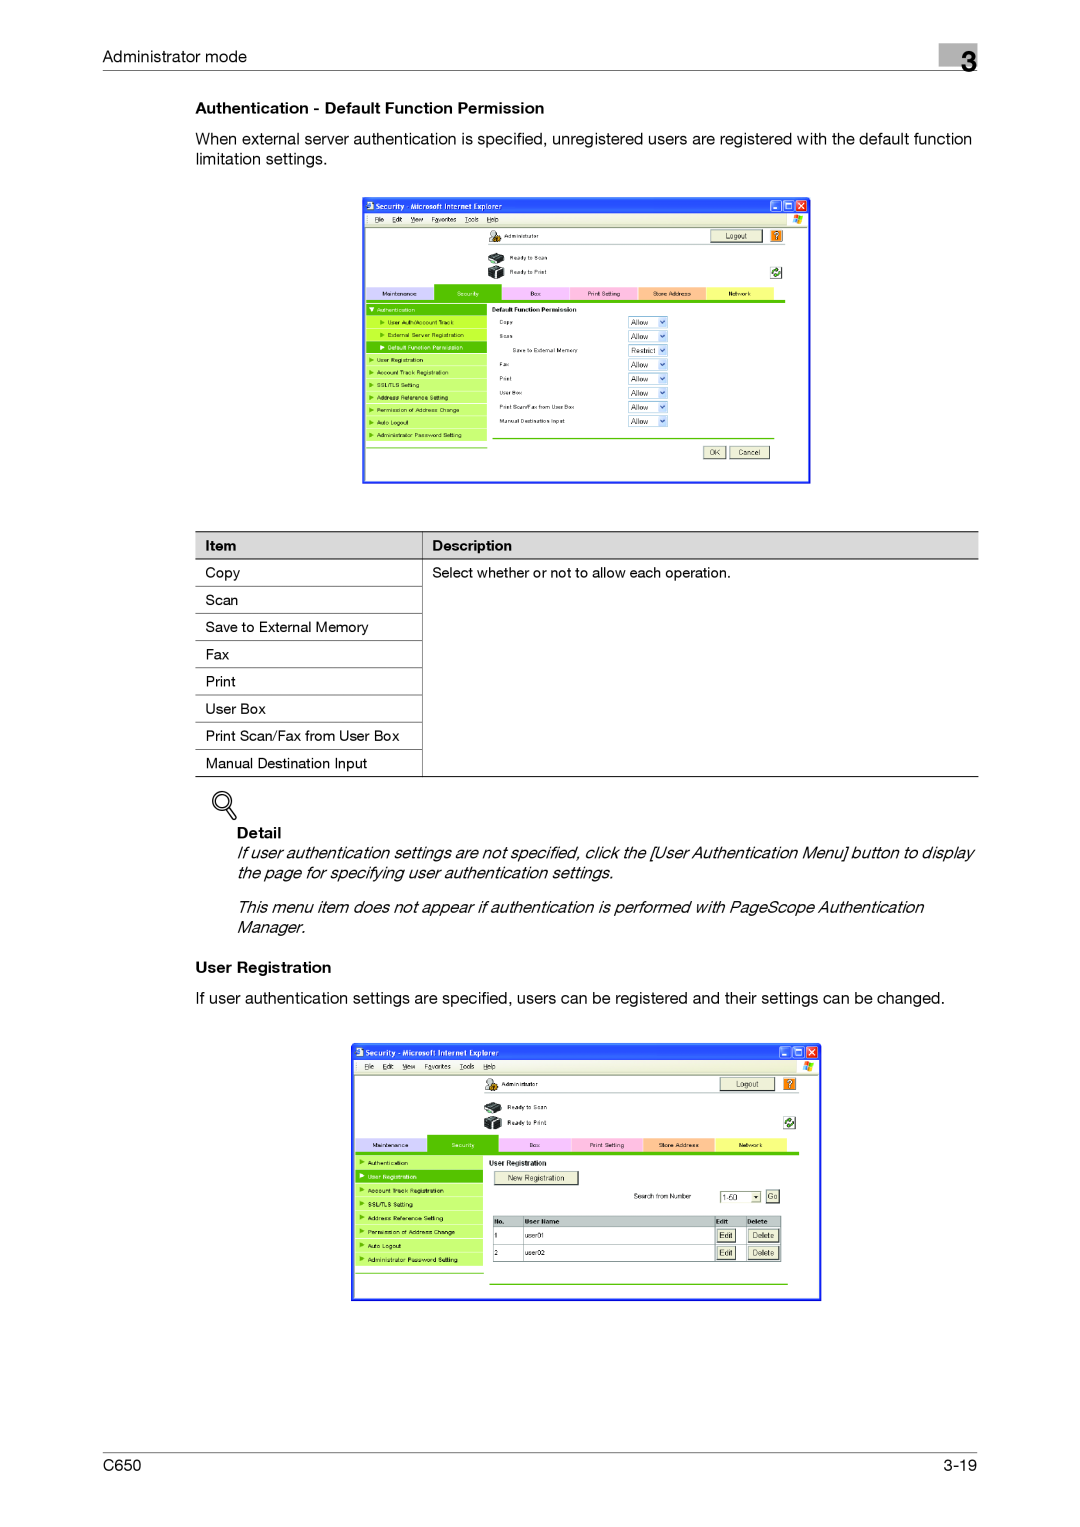 Konica Minolta C650 manual Authentication - Default Function Permission, Detail, User Registration 